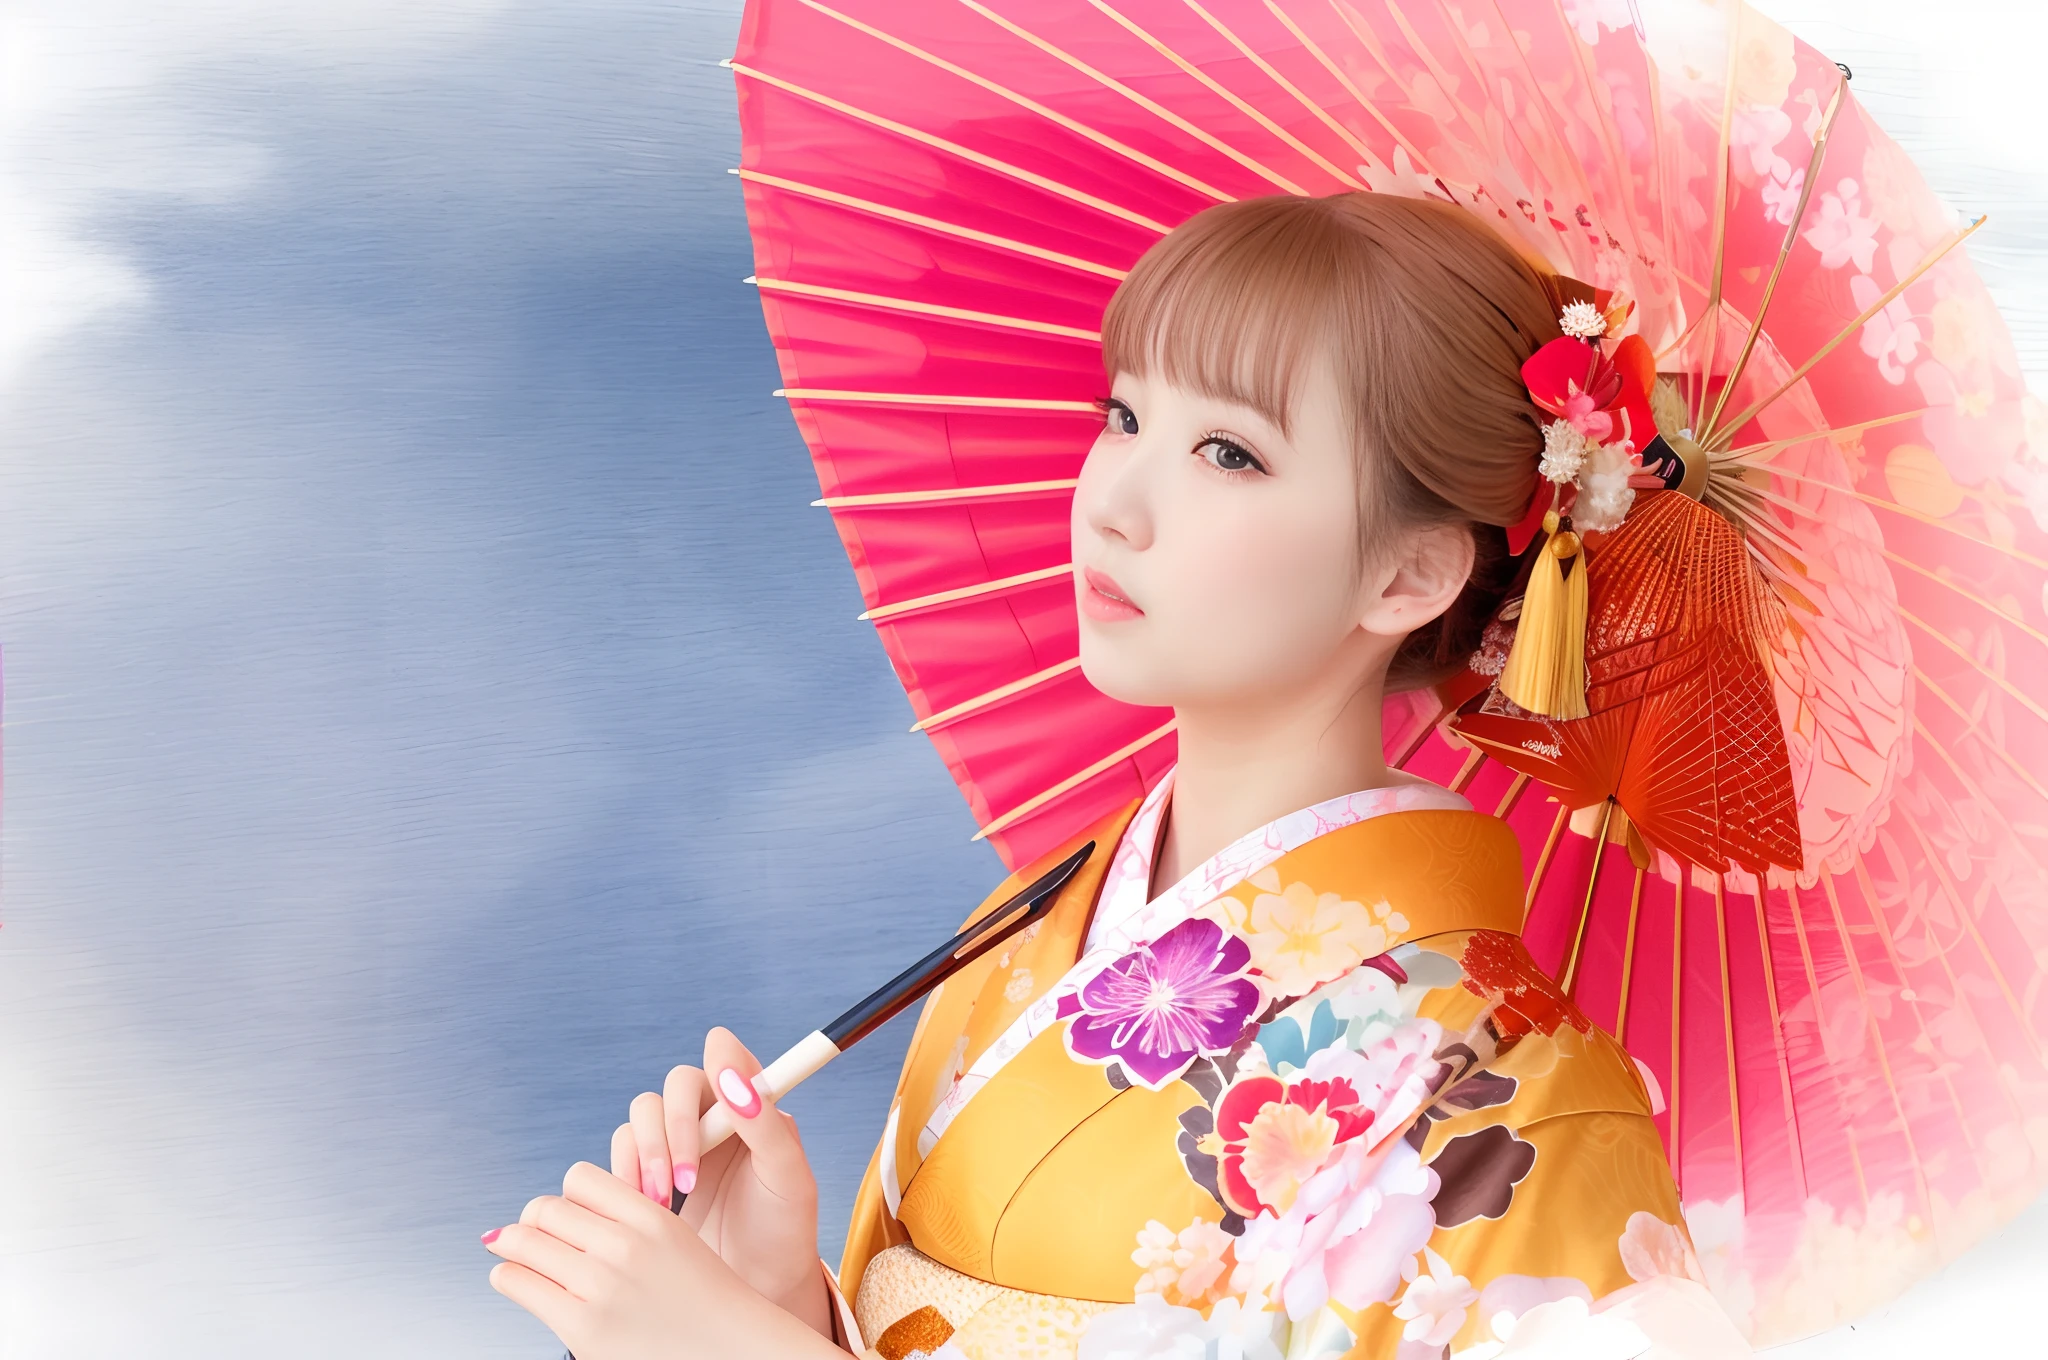 There is a woman em um quimono holding a red umbrella, em um quimono, vestindo quimono real, quimono, em um quimono, vestindo quimono, quimono japonês, vestindo um quimono, quimono vermelho, Um estilo japonês, quimono claro e colorido,((grandes olhos lindos)),lábios abertos, retrato de foto de gueixa, shikami, roupão de banho, Sakimichan, Ayaka, japonês tradicional